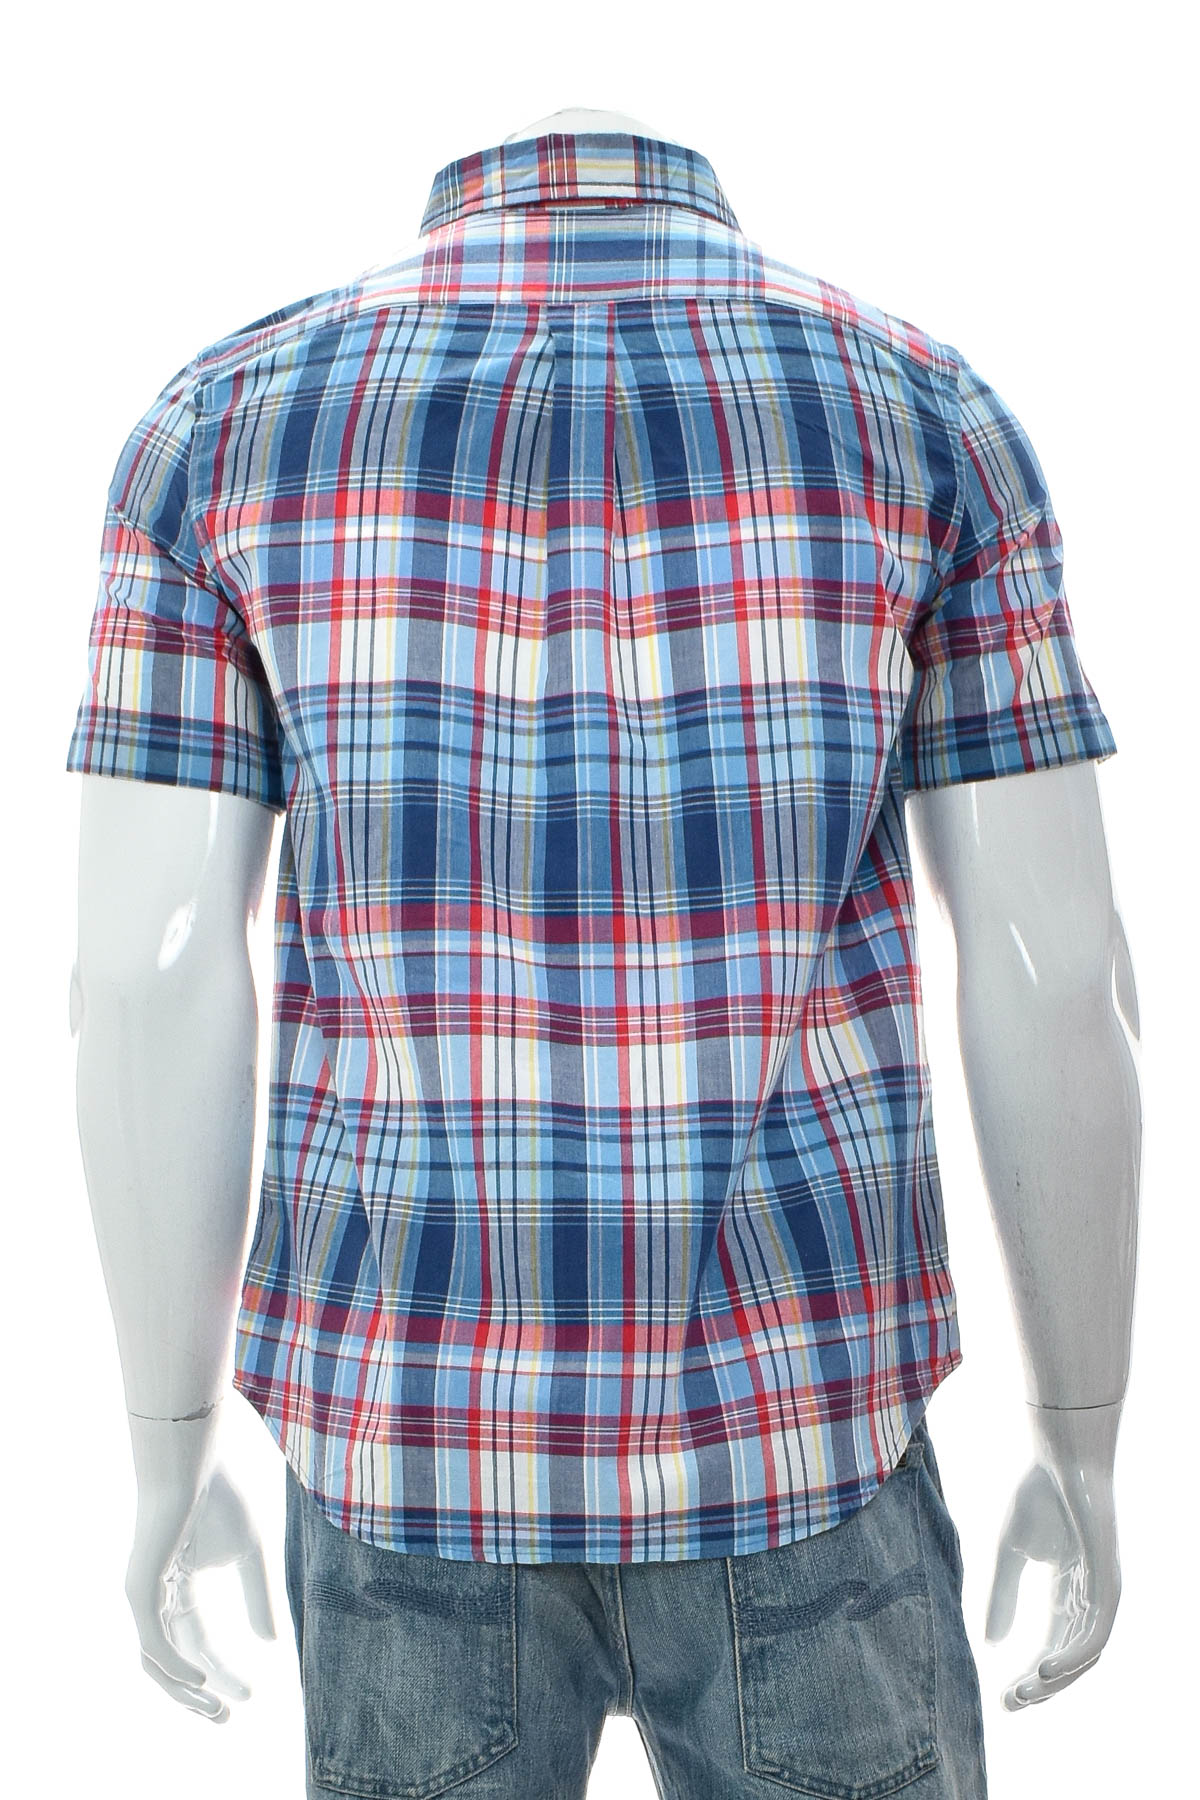 Boys' shirt - Ralph Lauren - 1